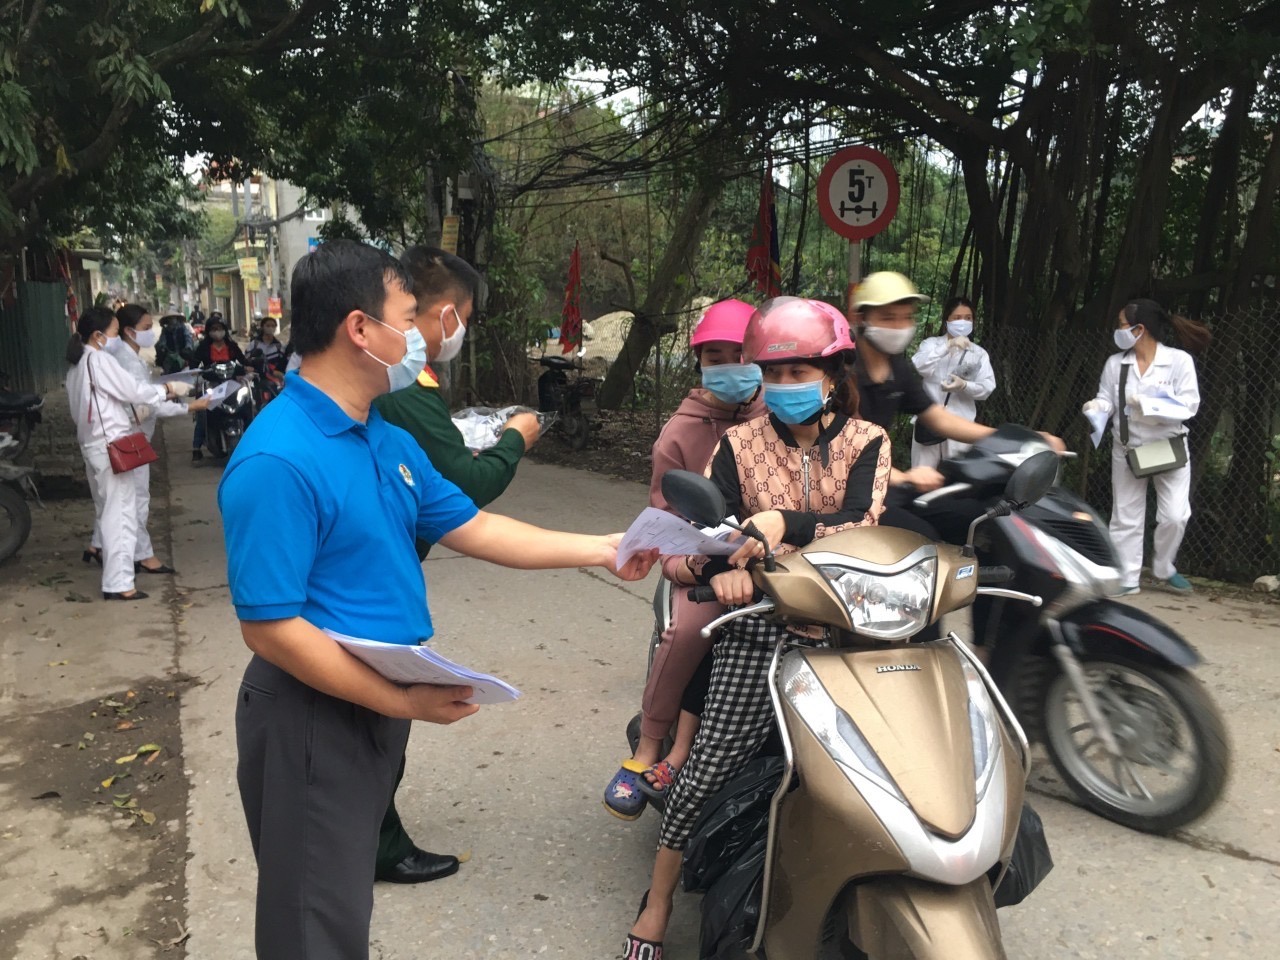 Cán bộ LĐLĐ huyện Văn Lâm (Hưng Yên) xuống khu nhà trọ để tuyên truyền tới đoàn viên, người lao động các biện pháp phòng, chống dịch COVID-19 và vận động chủ nhà giảm giá thuê phòng cho NLĐ. Ảnh: K.T